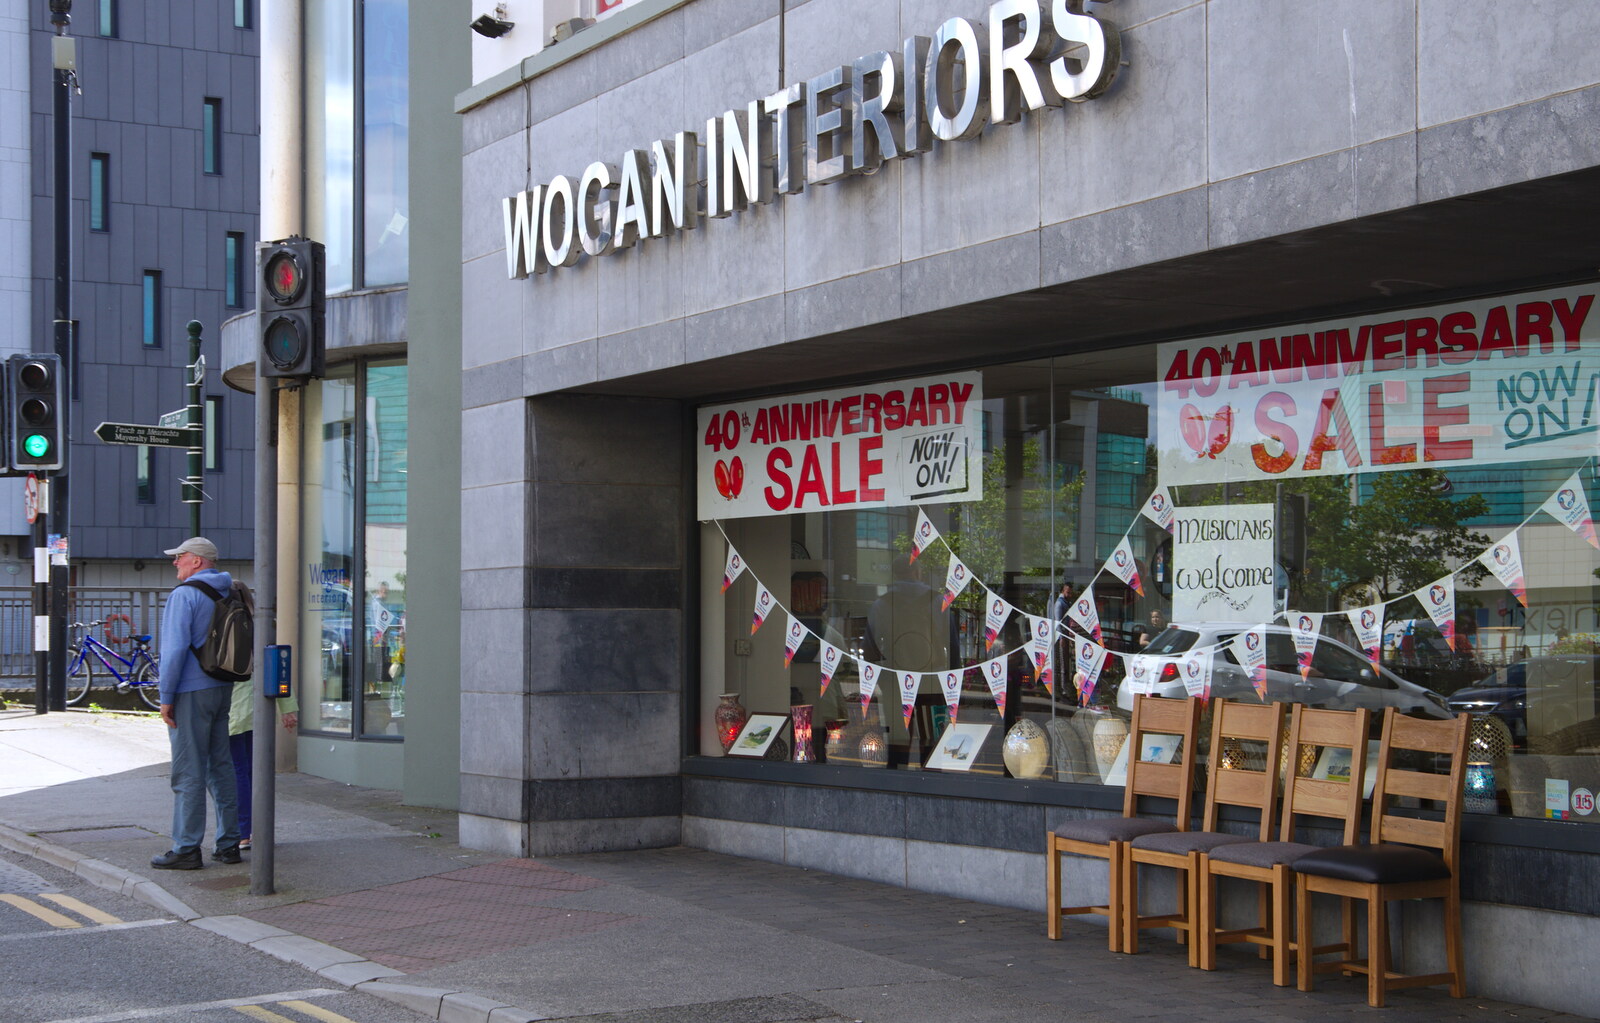 The excellently-named Wogan Interiors from The Fleadh Cheoil na hÉireann, Droichead Átha, Co. Louth, Ireland - 13th August 2019